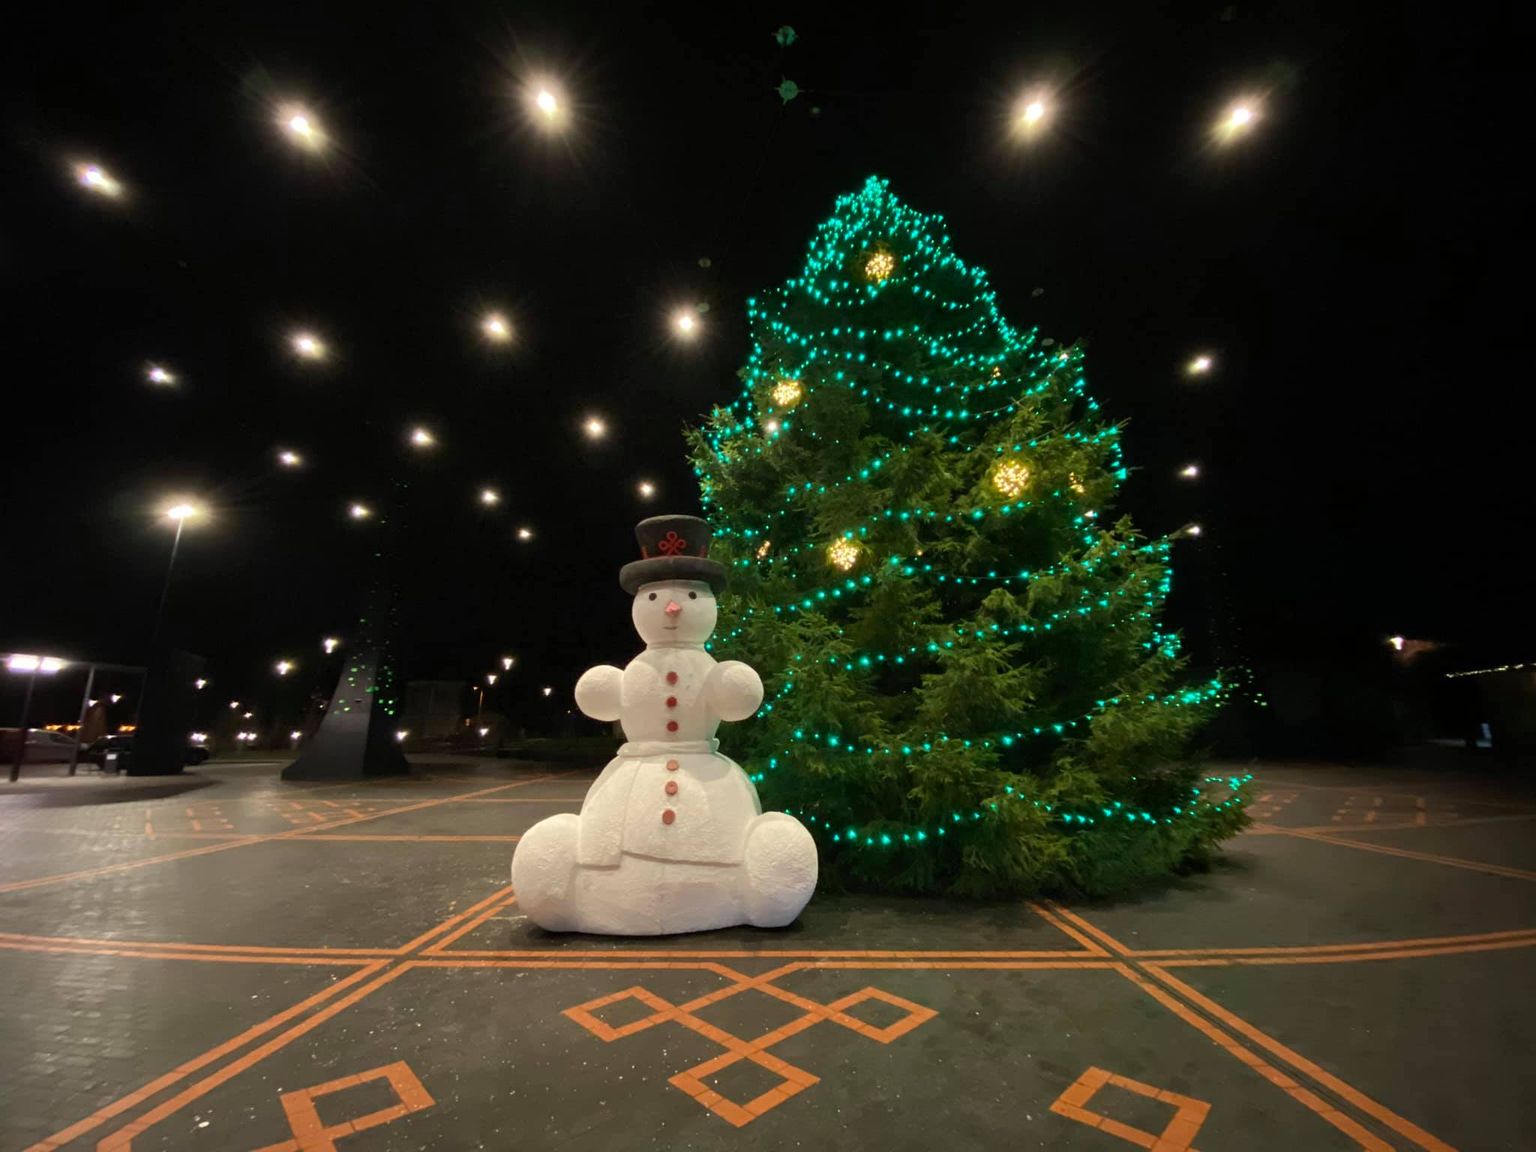 Tõrva keskväljakule, kus linlasi tervitas aasta tagasi lumememm, on kavandatud purskkaev.